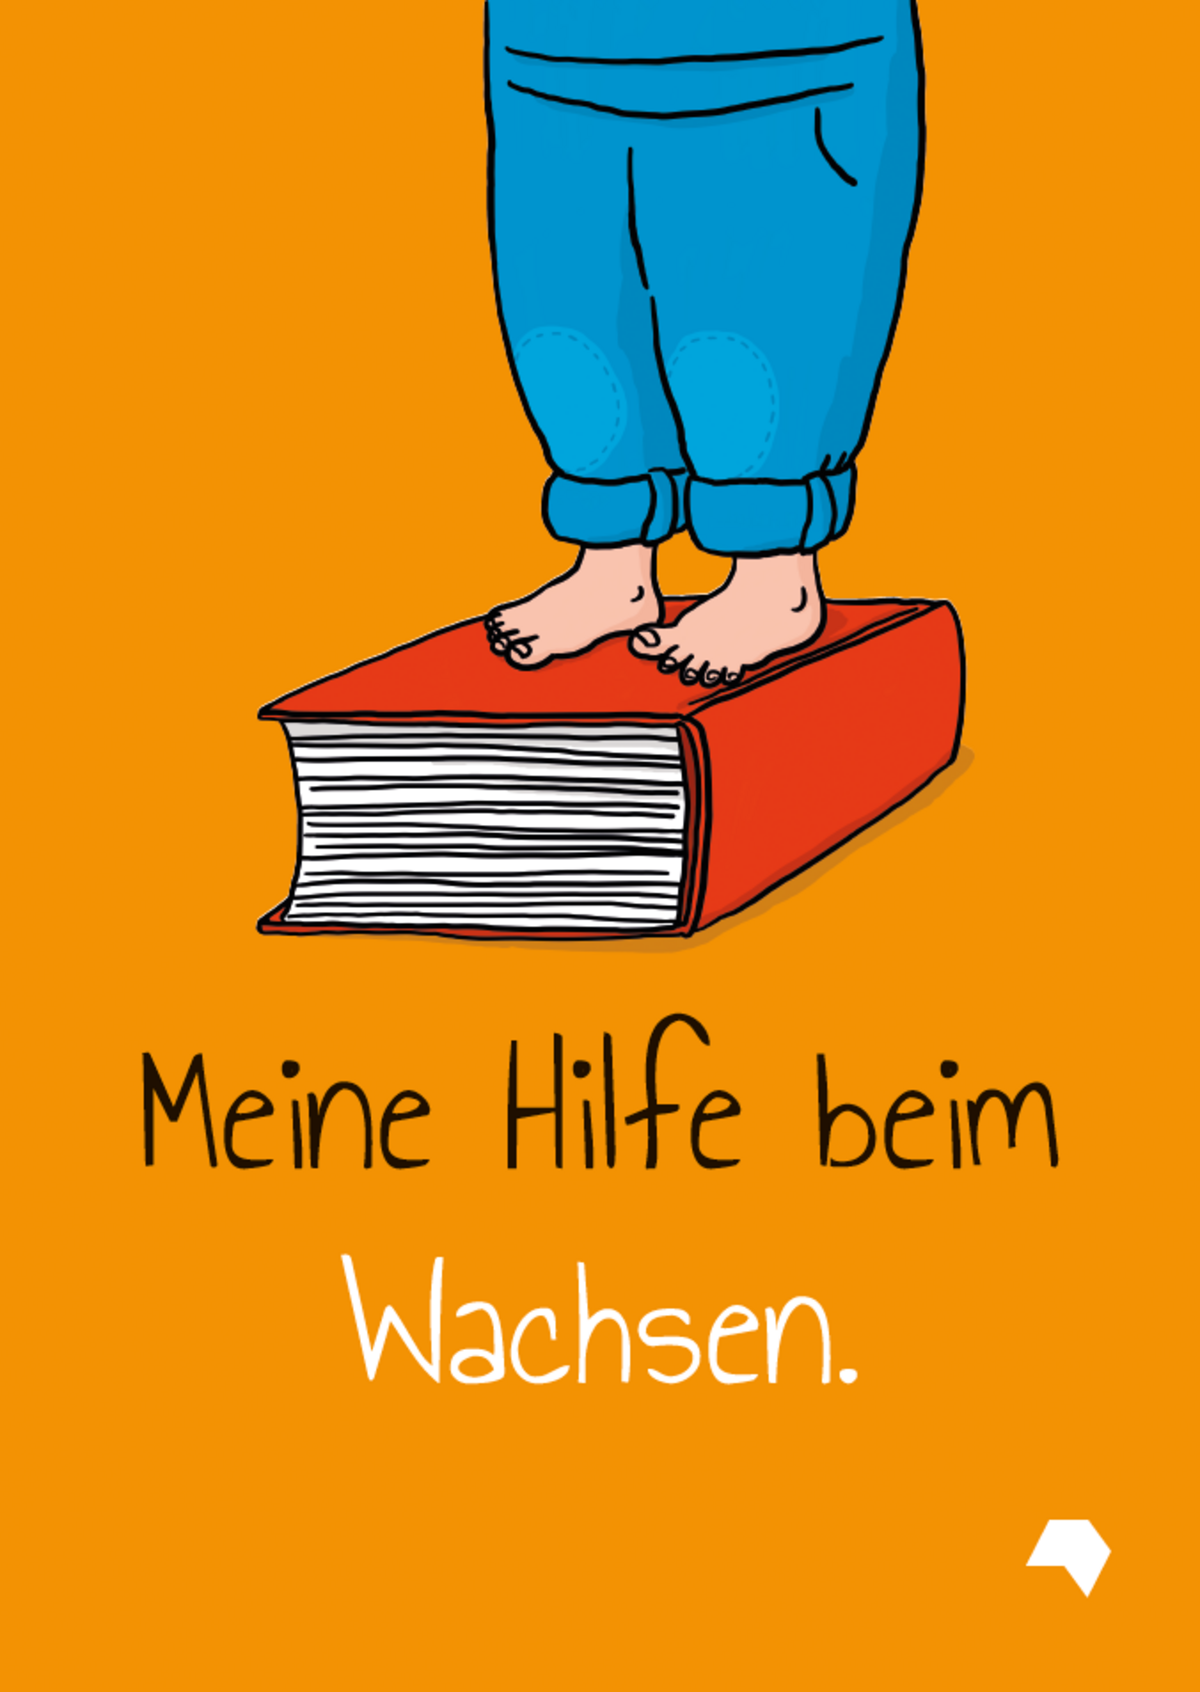 schwarz/weiße Schrift "Meine Hilfe beim Wachsen." auf orangen Hintergrund inkl. Zeichnung die Kinderbeine zeigt, die auf einem dicken Buch stehen.